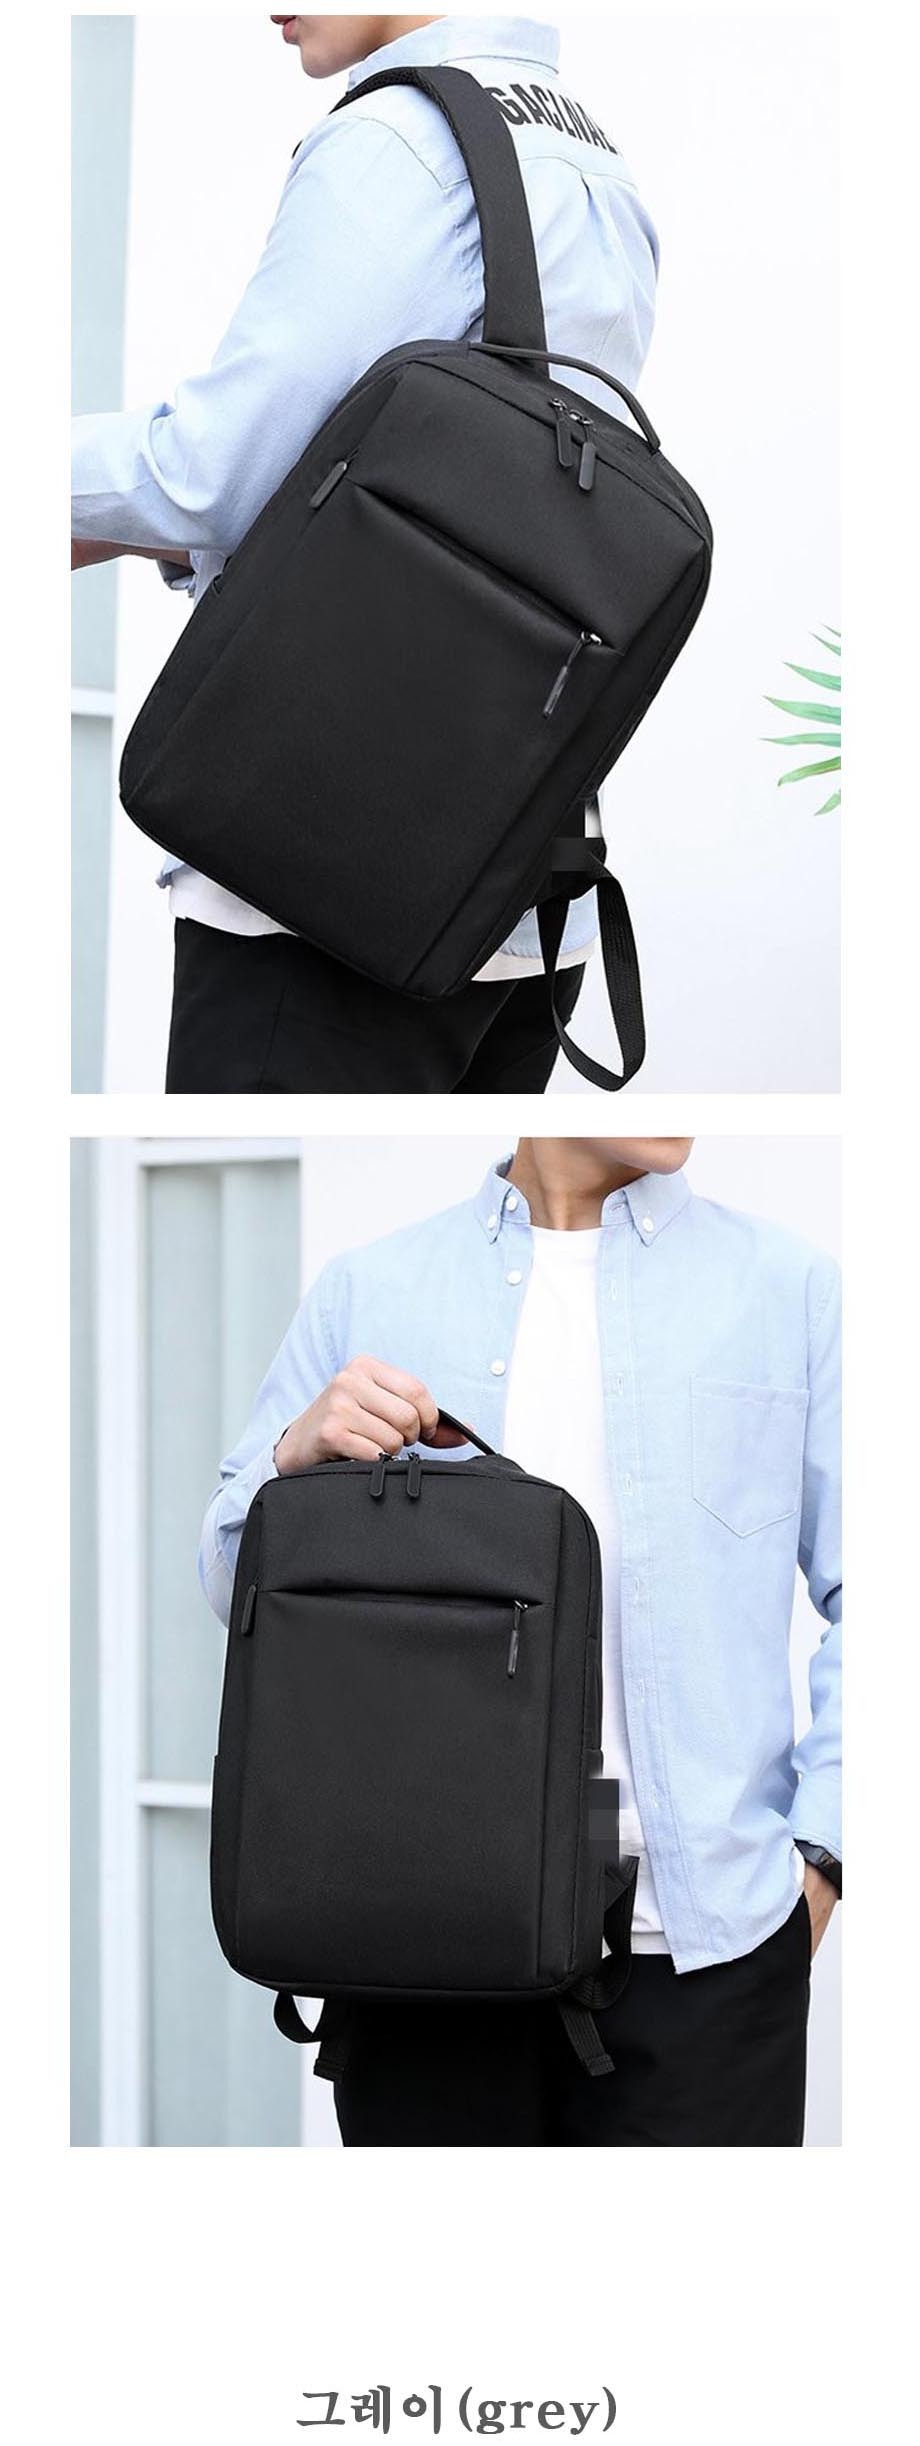 LD-955-simple-line-bagpack-03.jpg